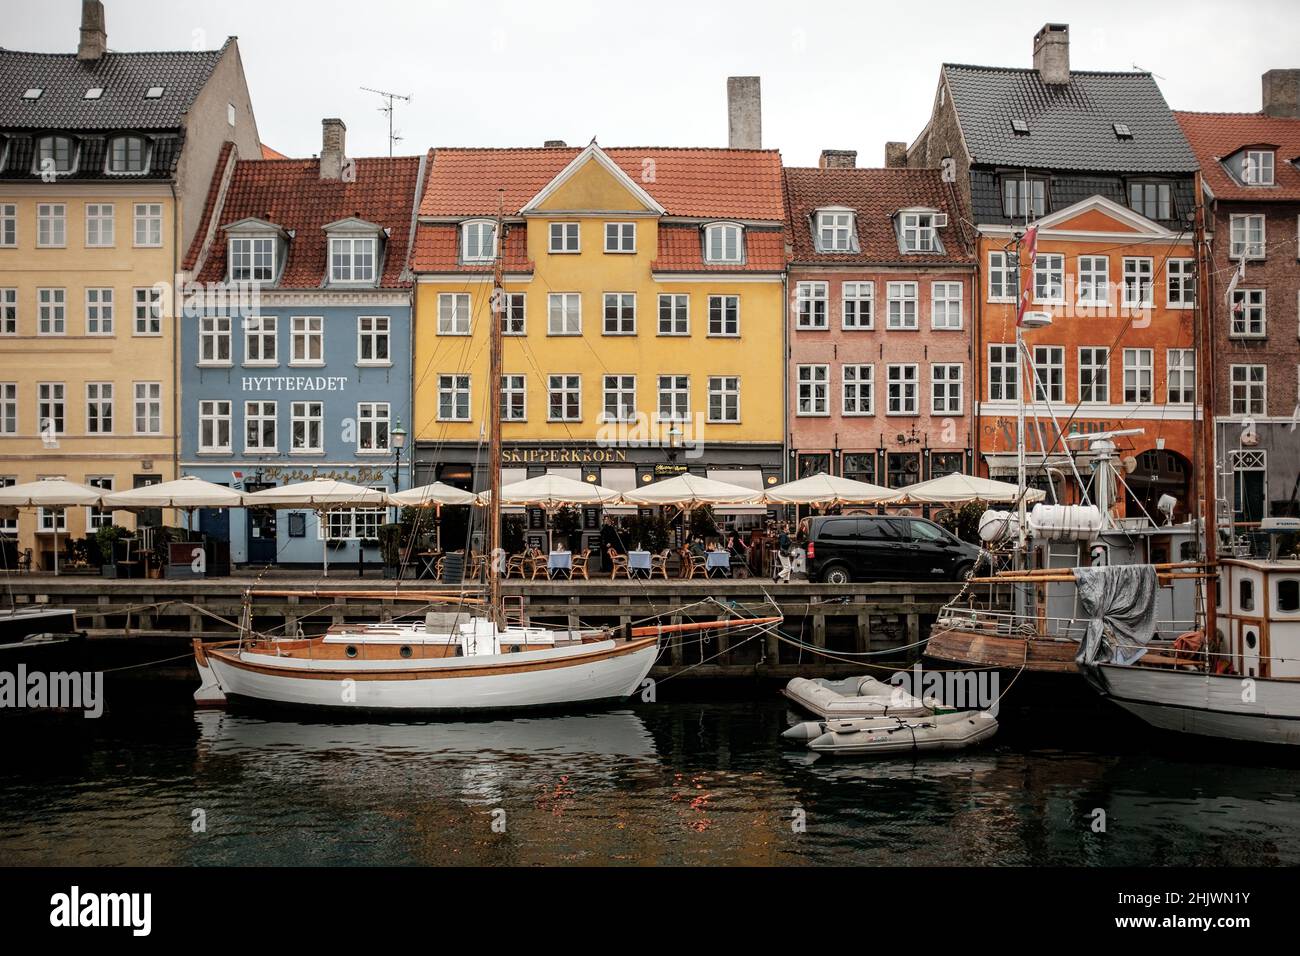 Nyhavn ist ein Kanal- und Unterhaltungsviertel aus dem 17th. Jahrhundert in Kopenhagen, gesäumt von bunten Stadthäusern aus dem 17th. Und 18th. Jahrhundert. Stockfoto